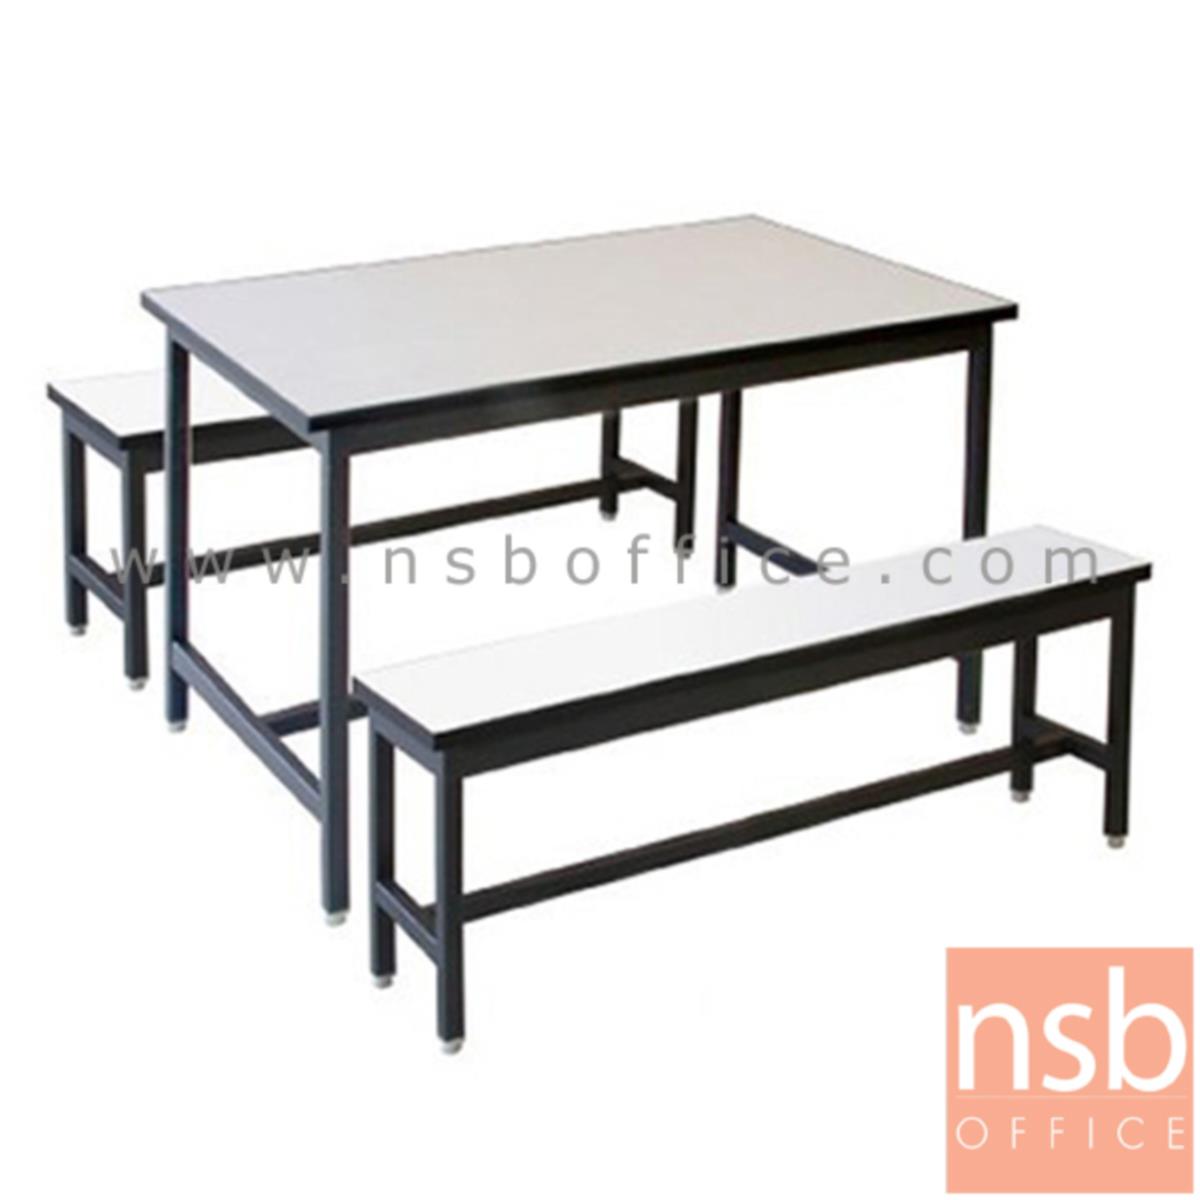 ชุดโต๊ะและเก้าอี้รับประทานอาหารหน้าโฟเมก้าขาว รุ่น Another (อโนเทอร์) ขนาด 120W ,150W ,180W cm.  โครงขาเหล็กดำ